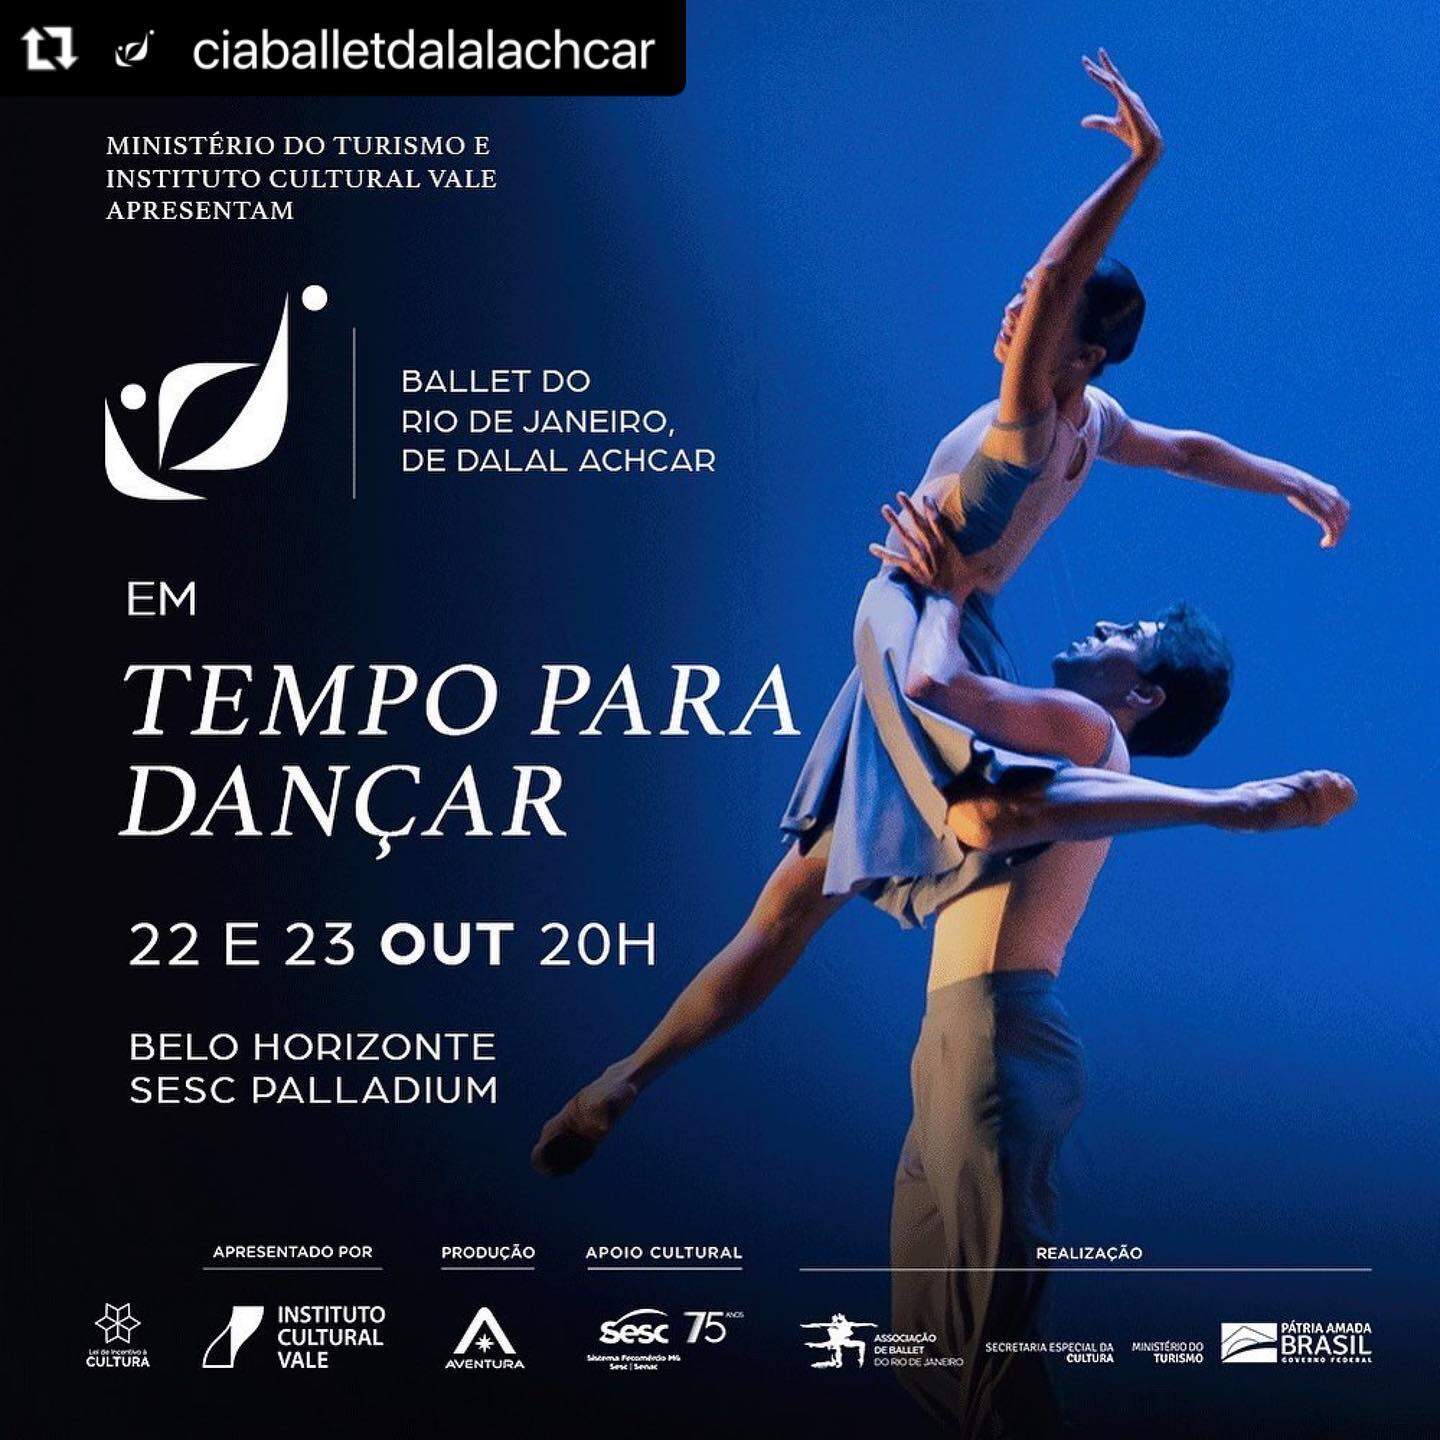 Cia. de Ballet Dalal Achcar: "Tempo de Dançar" - SESC Palladium